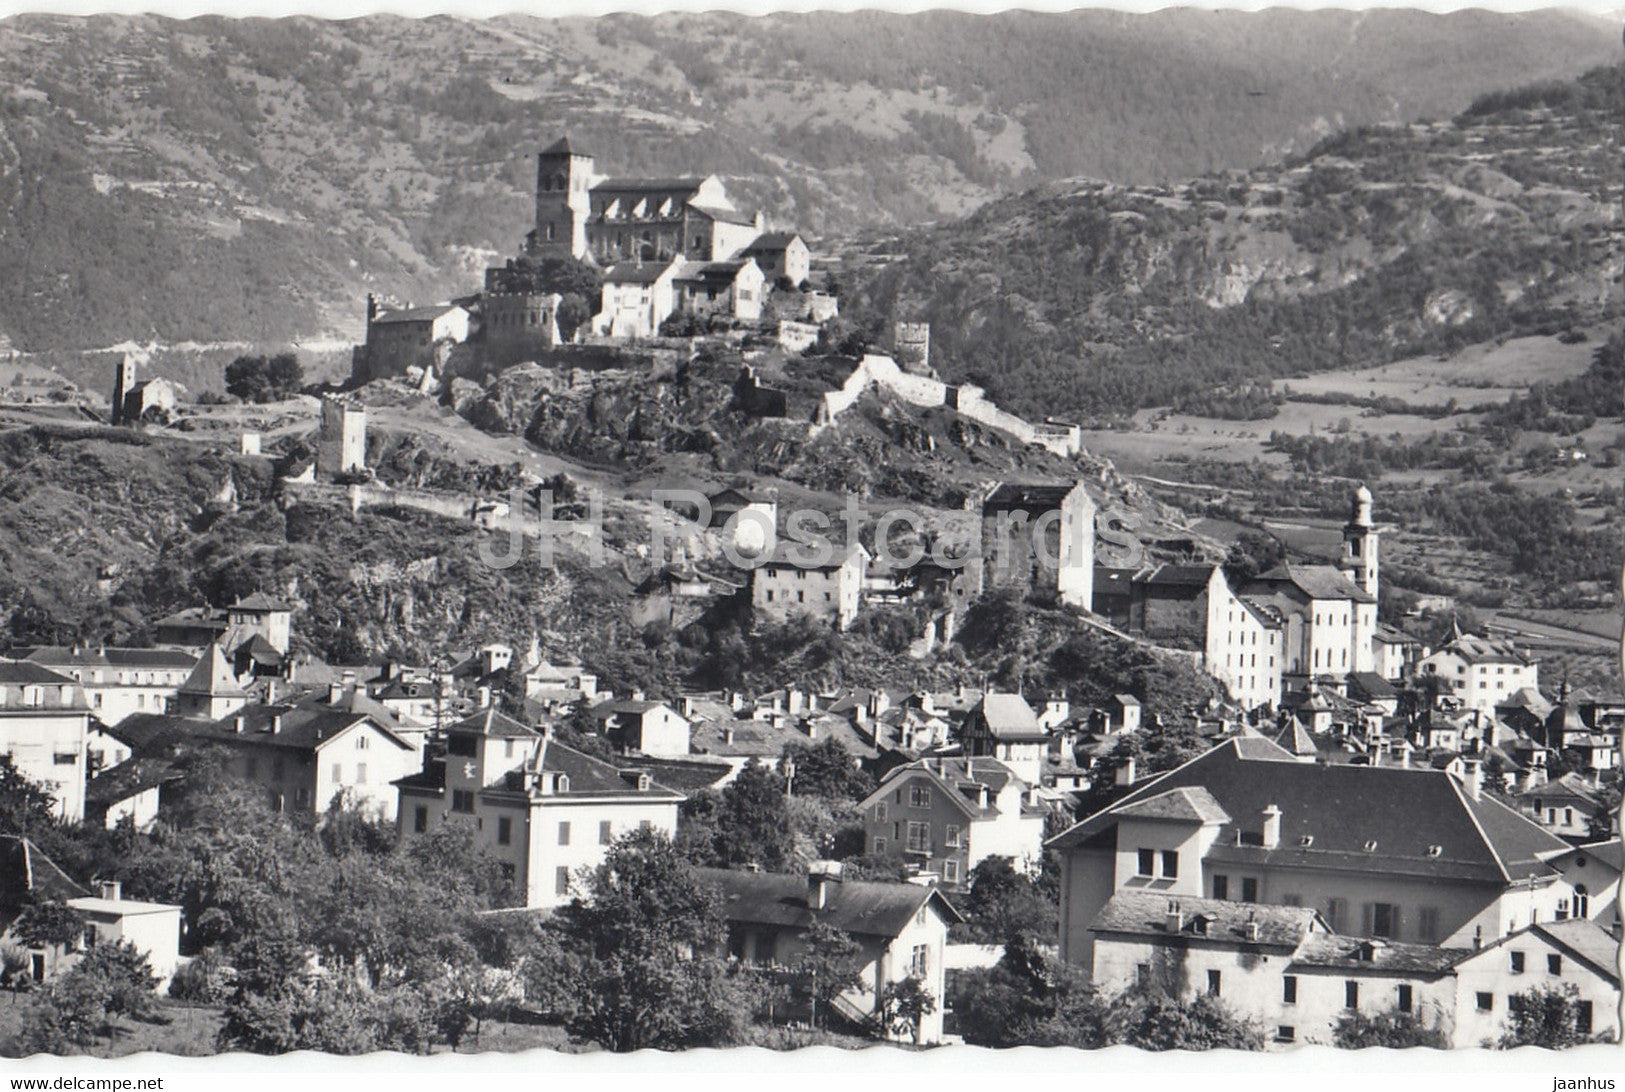 Sion - Le Chateau de Valere - La Chapelle de Tous les Saints - 8 - Switzerland - unused - JH Postcards